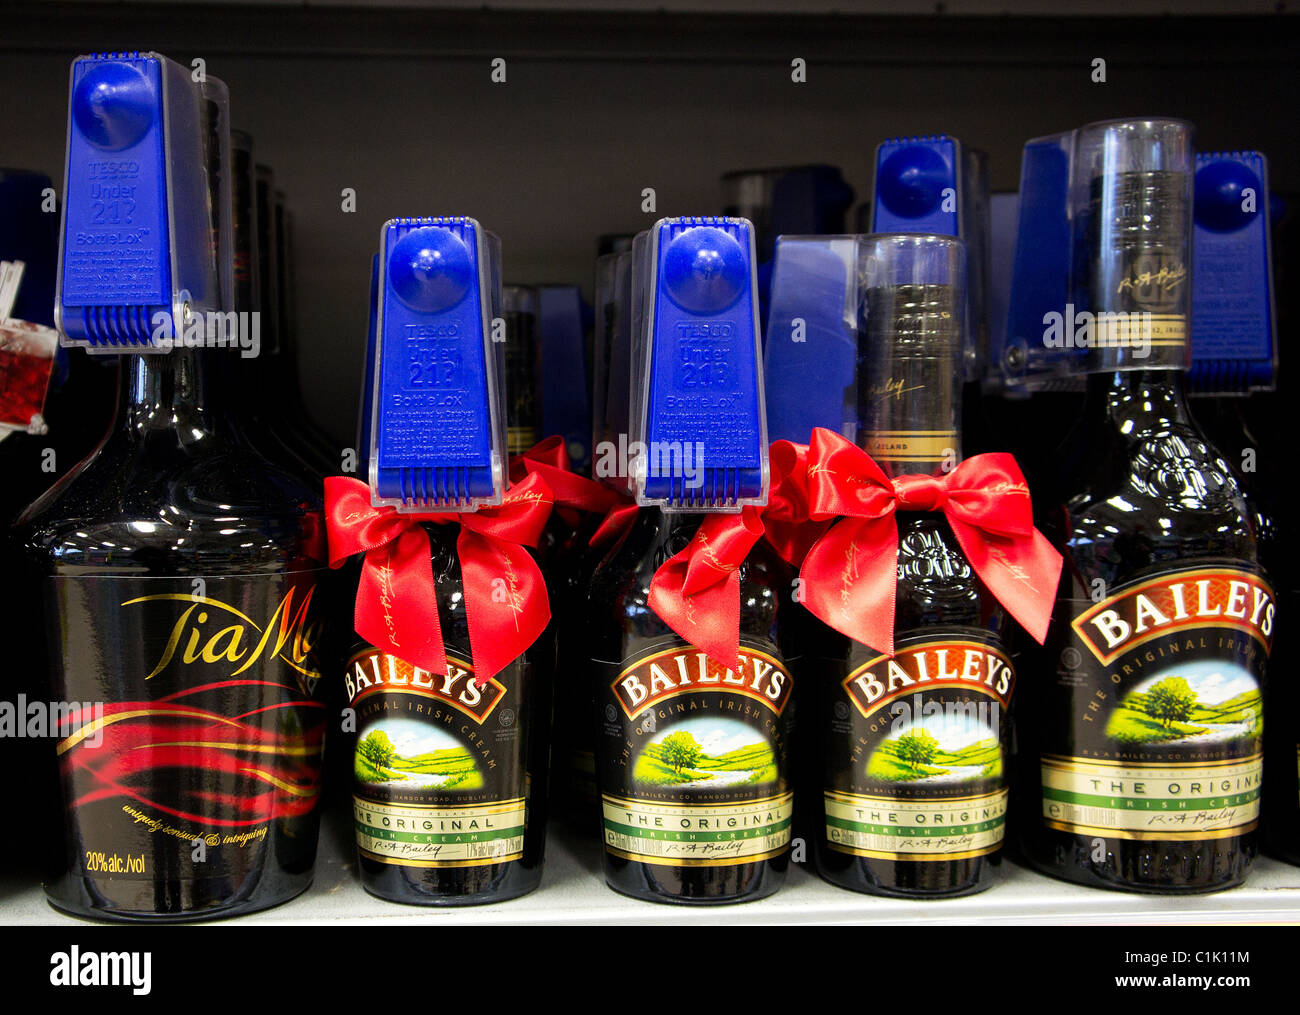 Bouteilles de liqueur Baileys tagged sécurité dans un supermarché au Royaume-Uni Banque D'Images